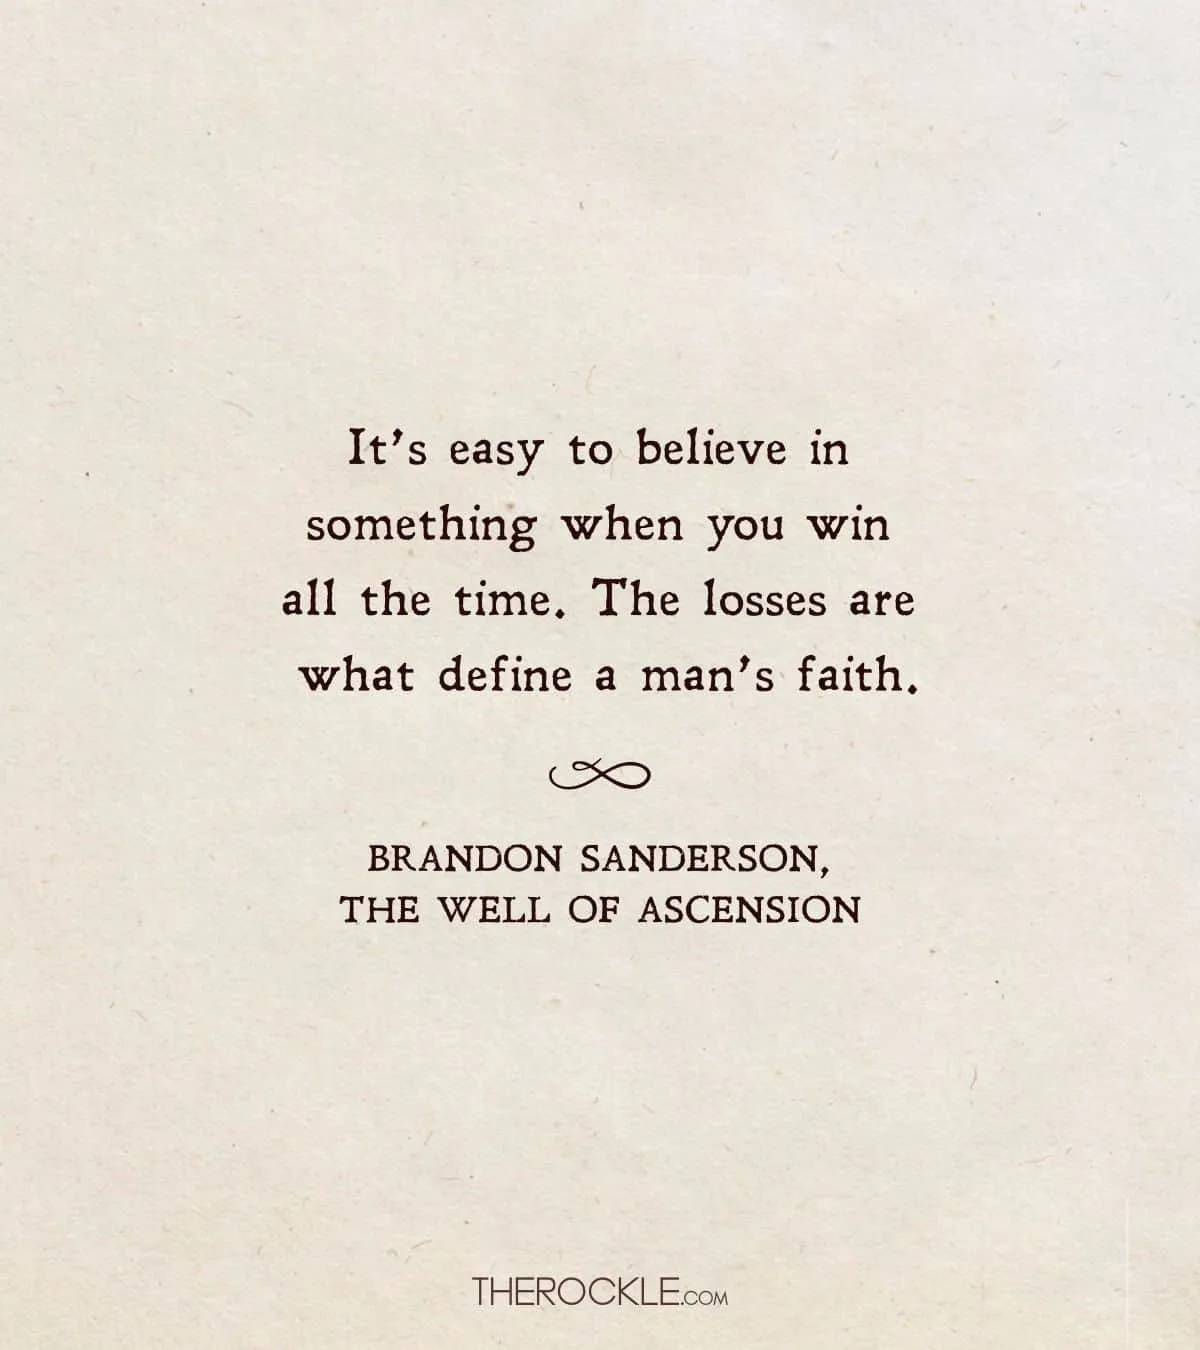 Sanderson on faith through losses